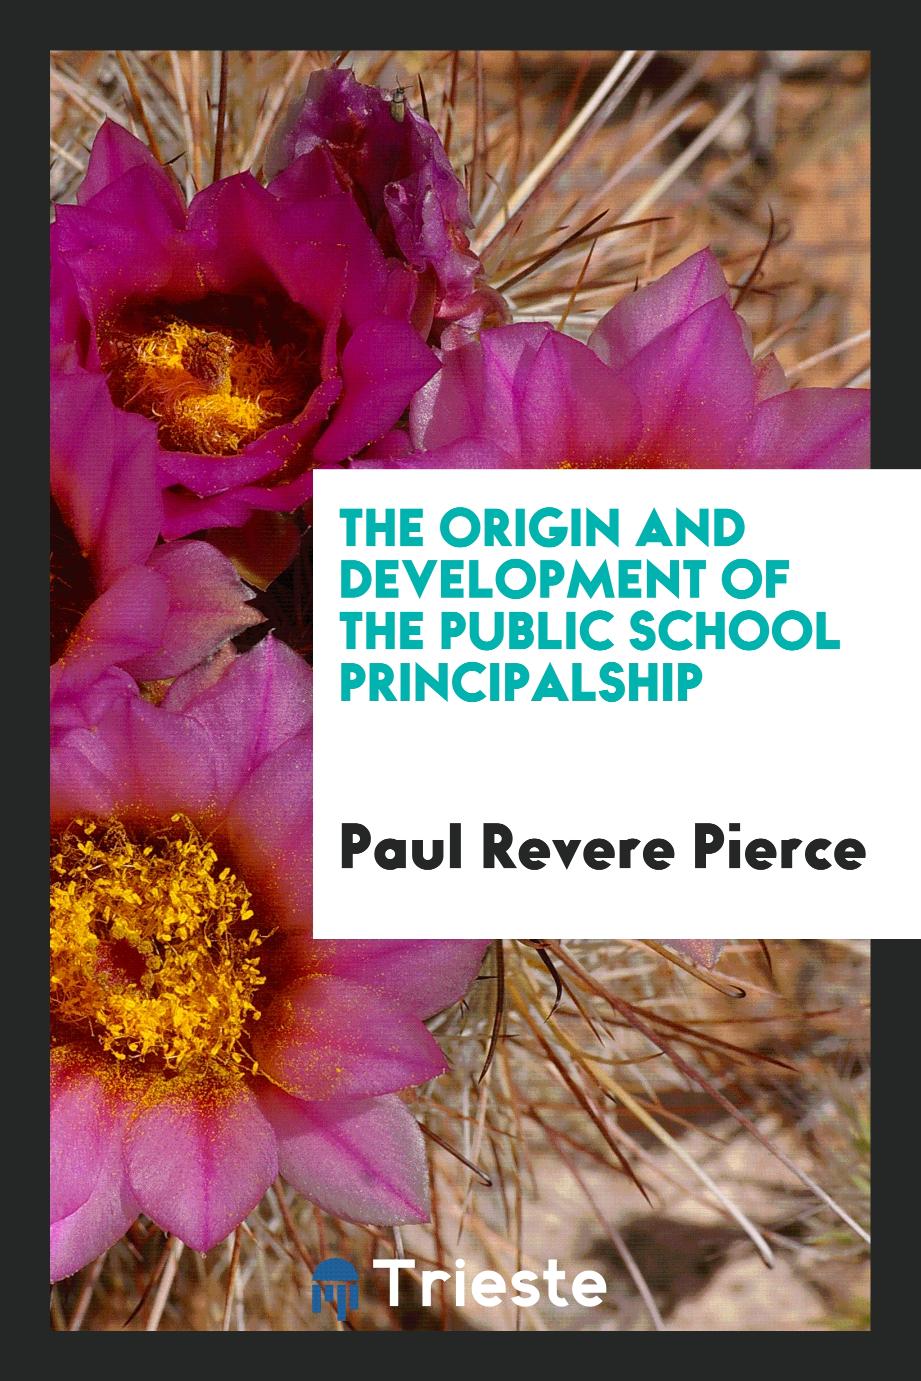 The origin and development of the public school principalship